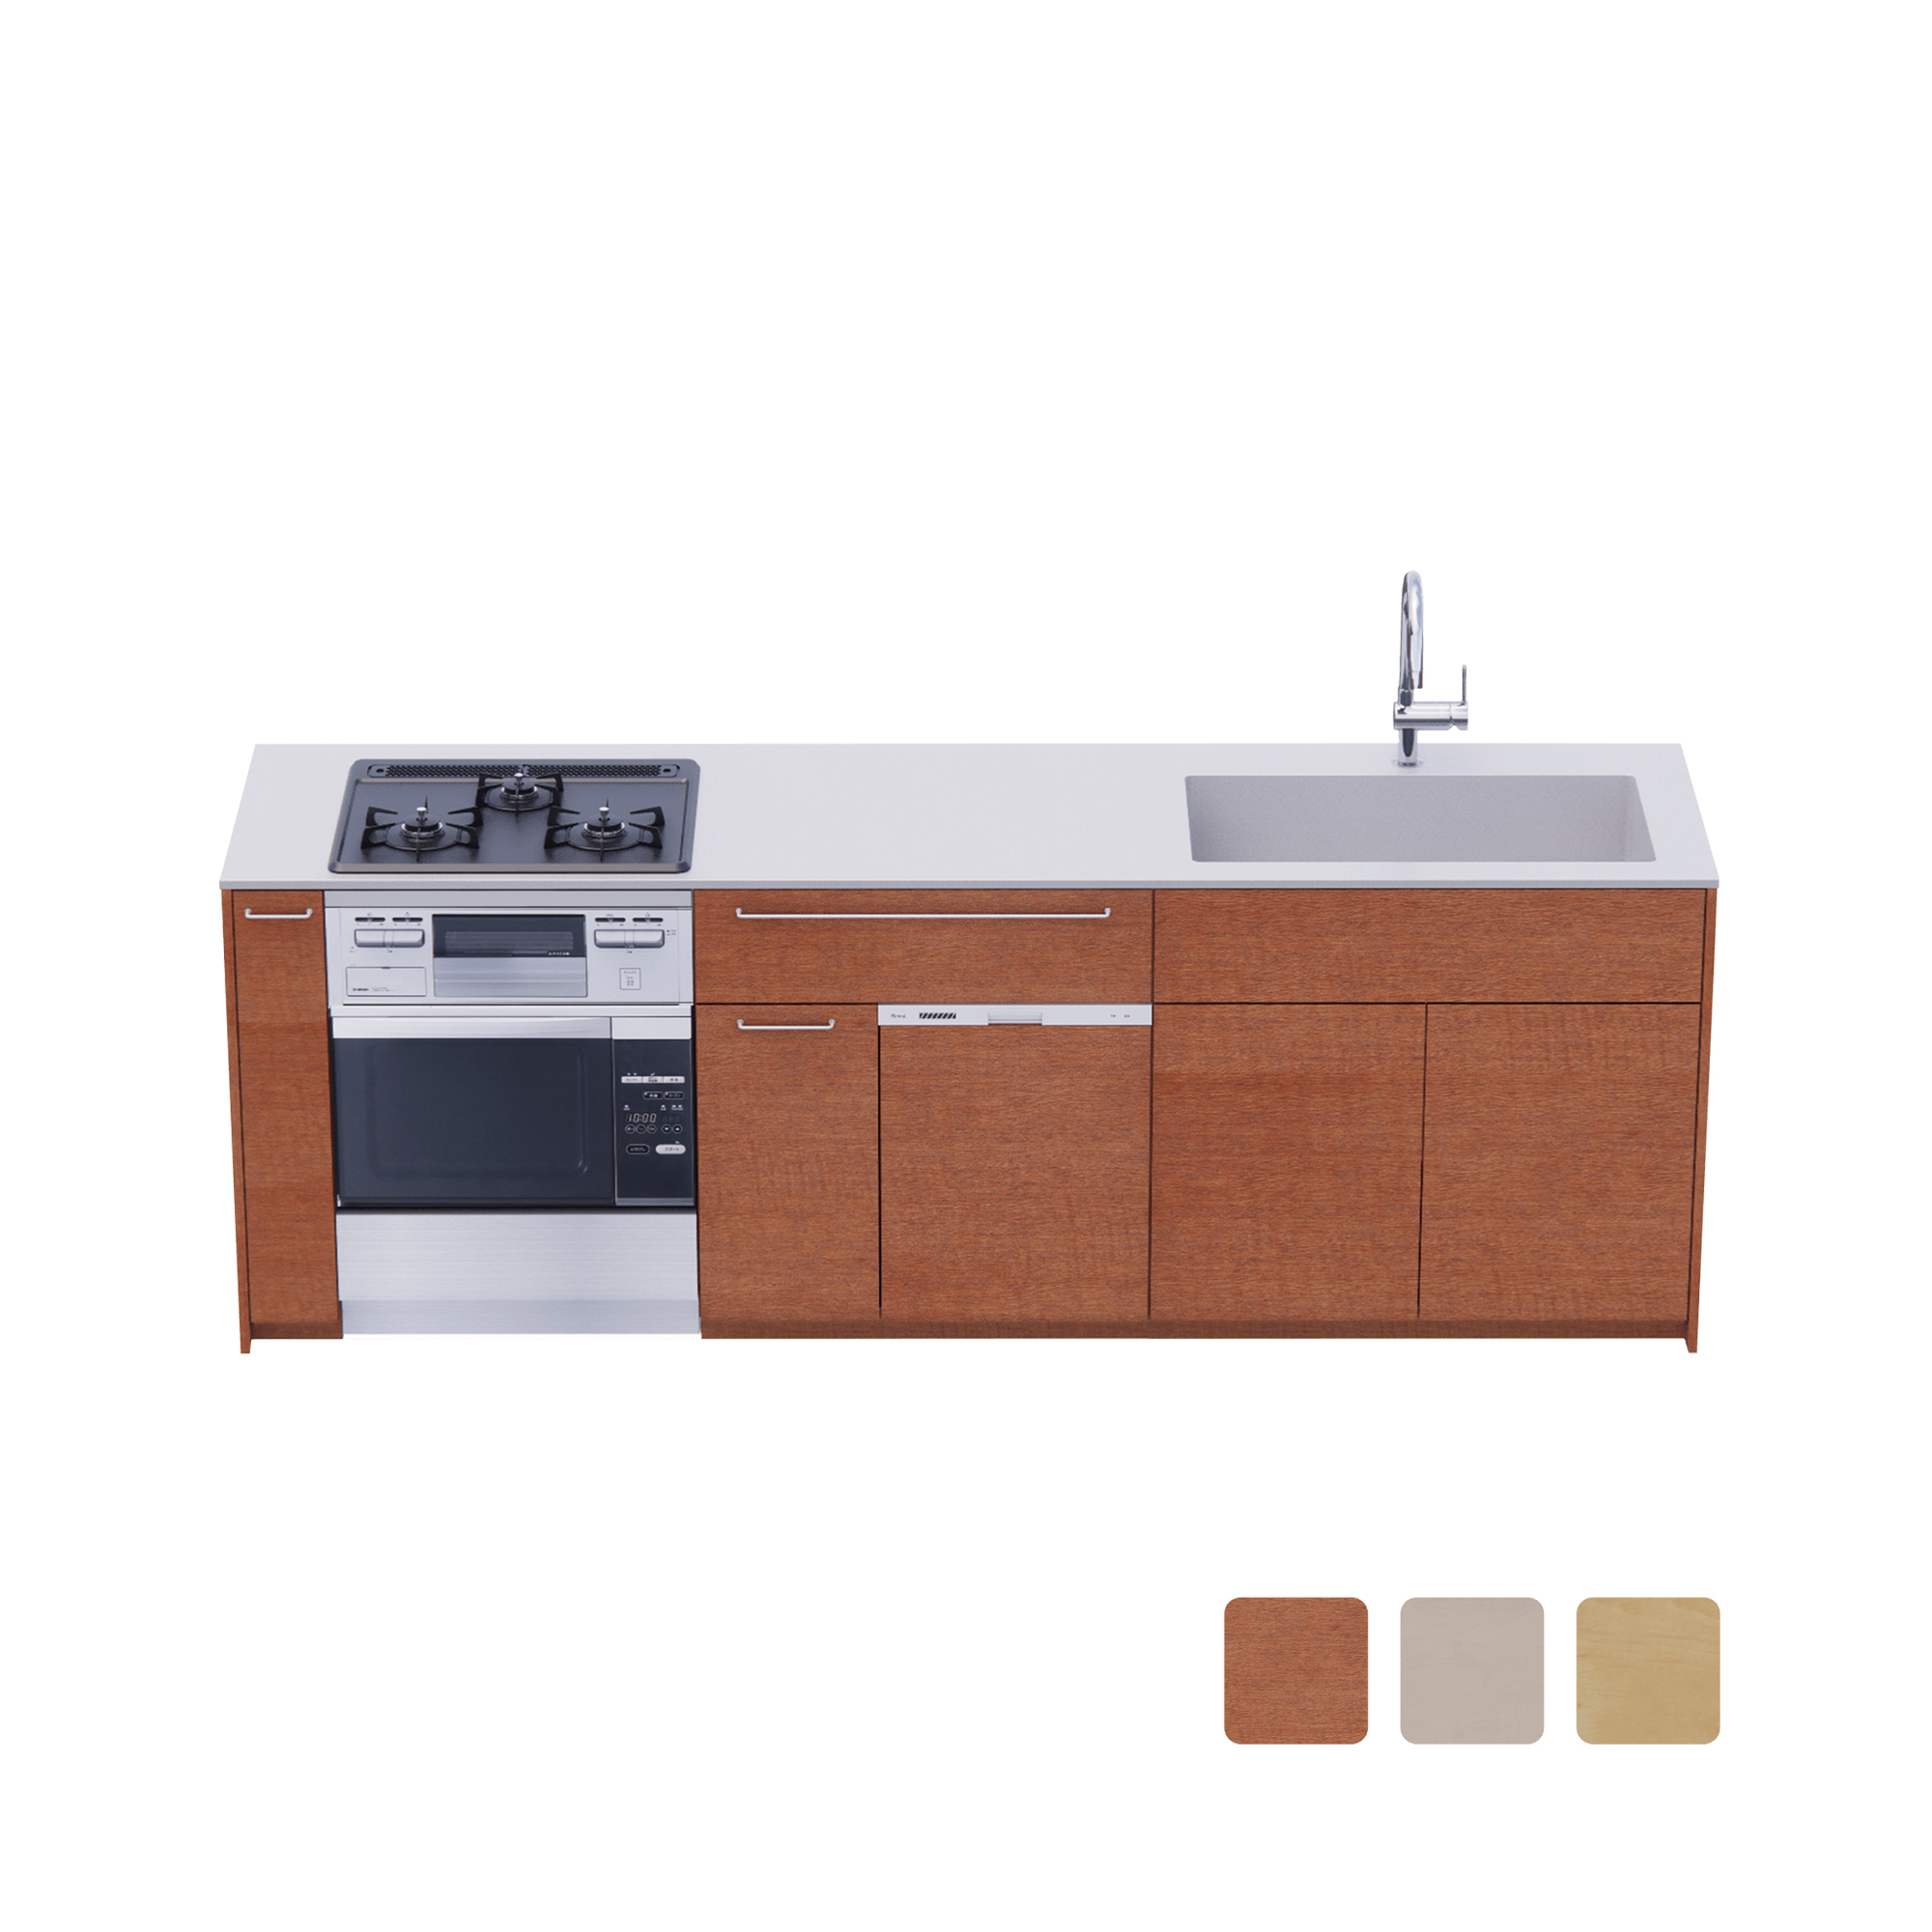 木製システムキッチン 壁付け型 W2440～2740・コンロあり / オーブンあり / 食洗機あり KB-KC022-28-G183 壁付け型 W2440　※ 別売り品の水栓・コンロ・オーブン・食洗機を設置した時のイメージです